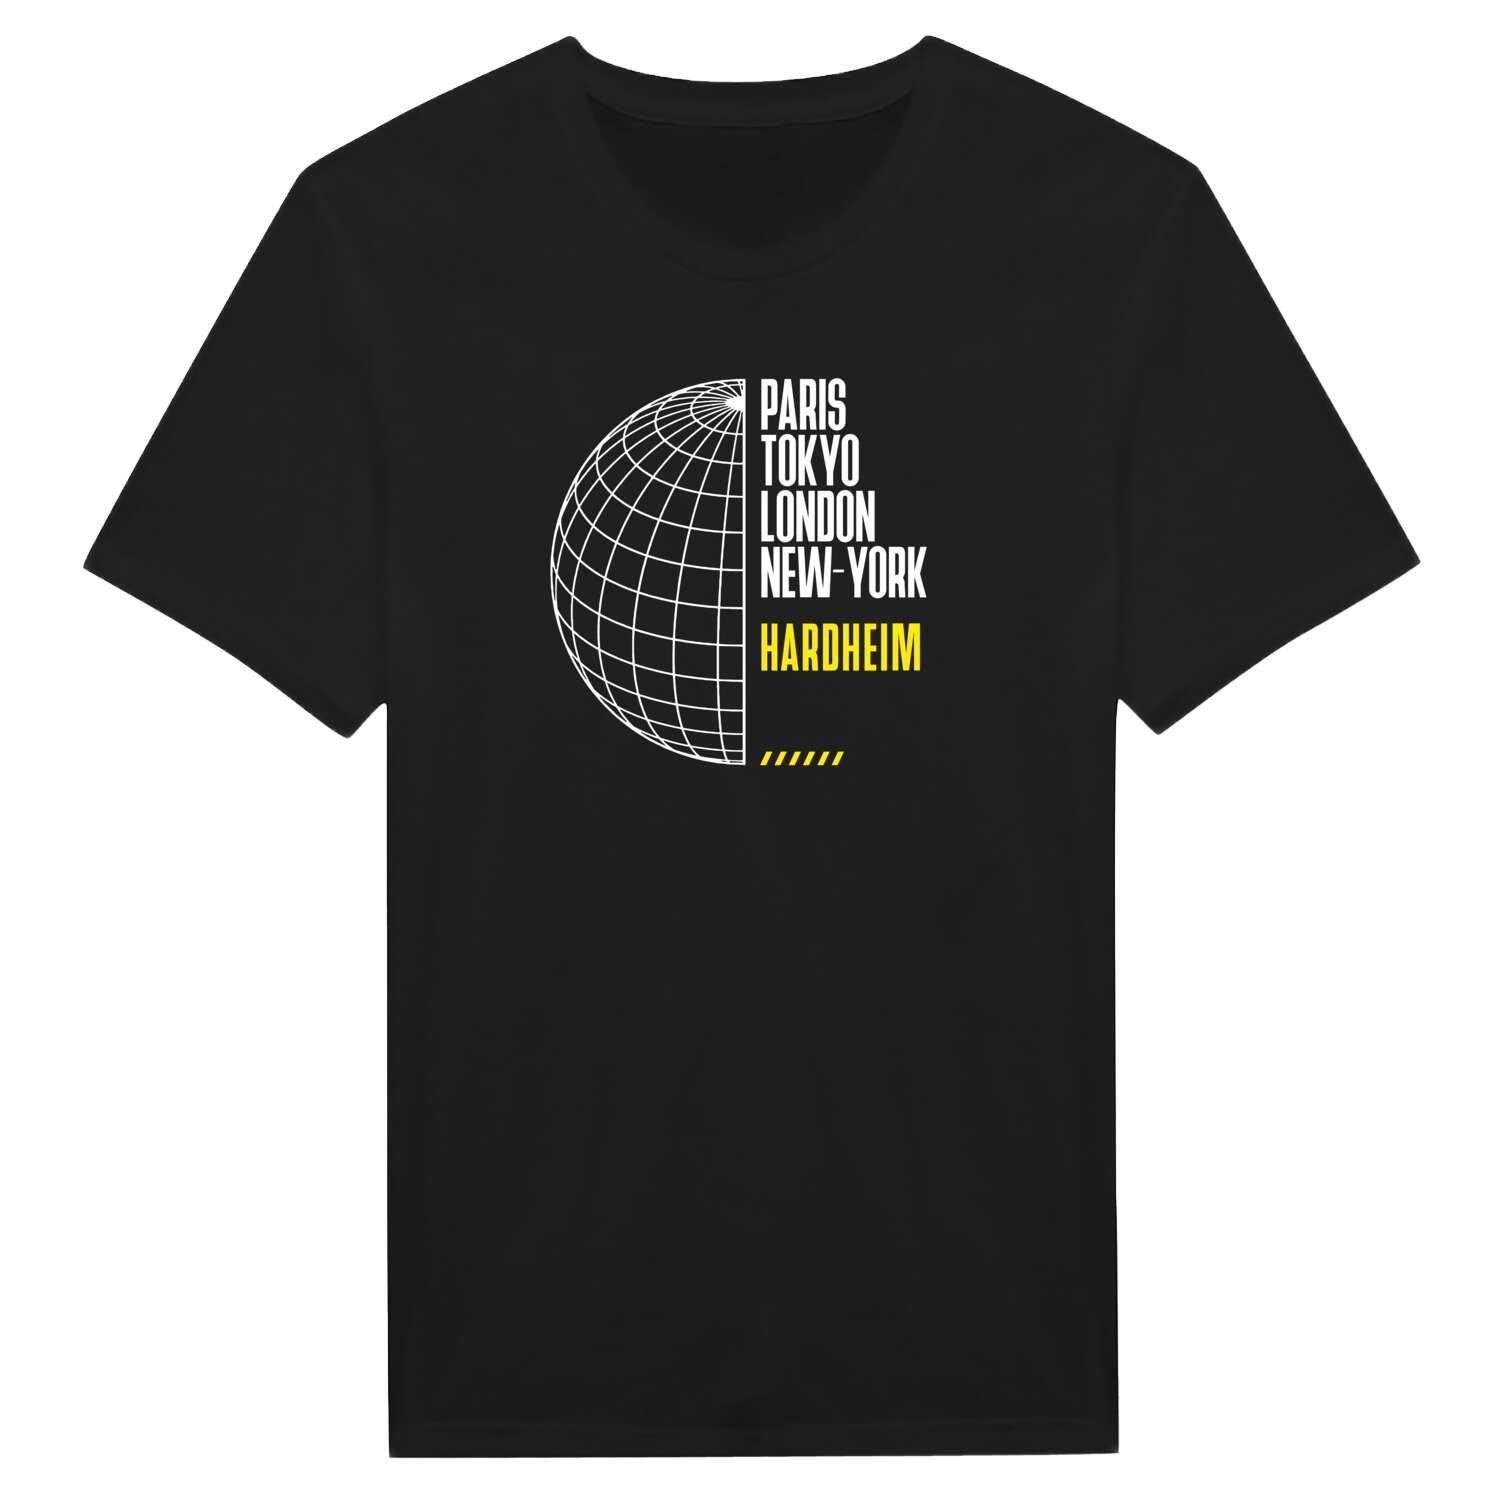 Hardheim T-Shirt »Paris Tokyo London«